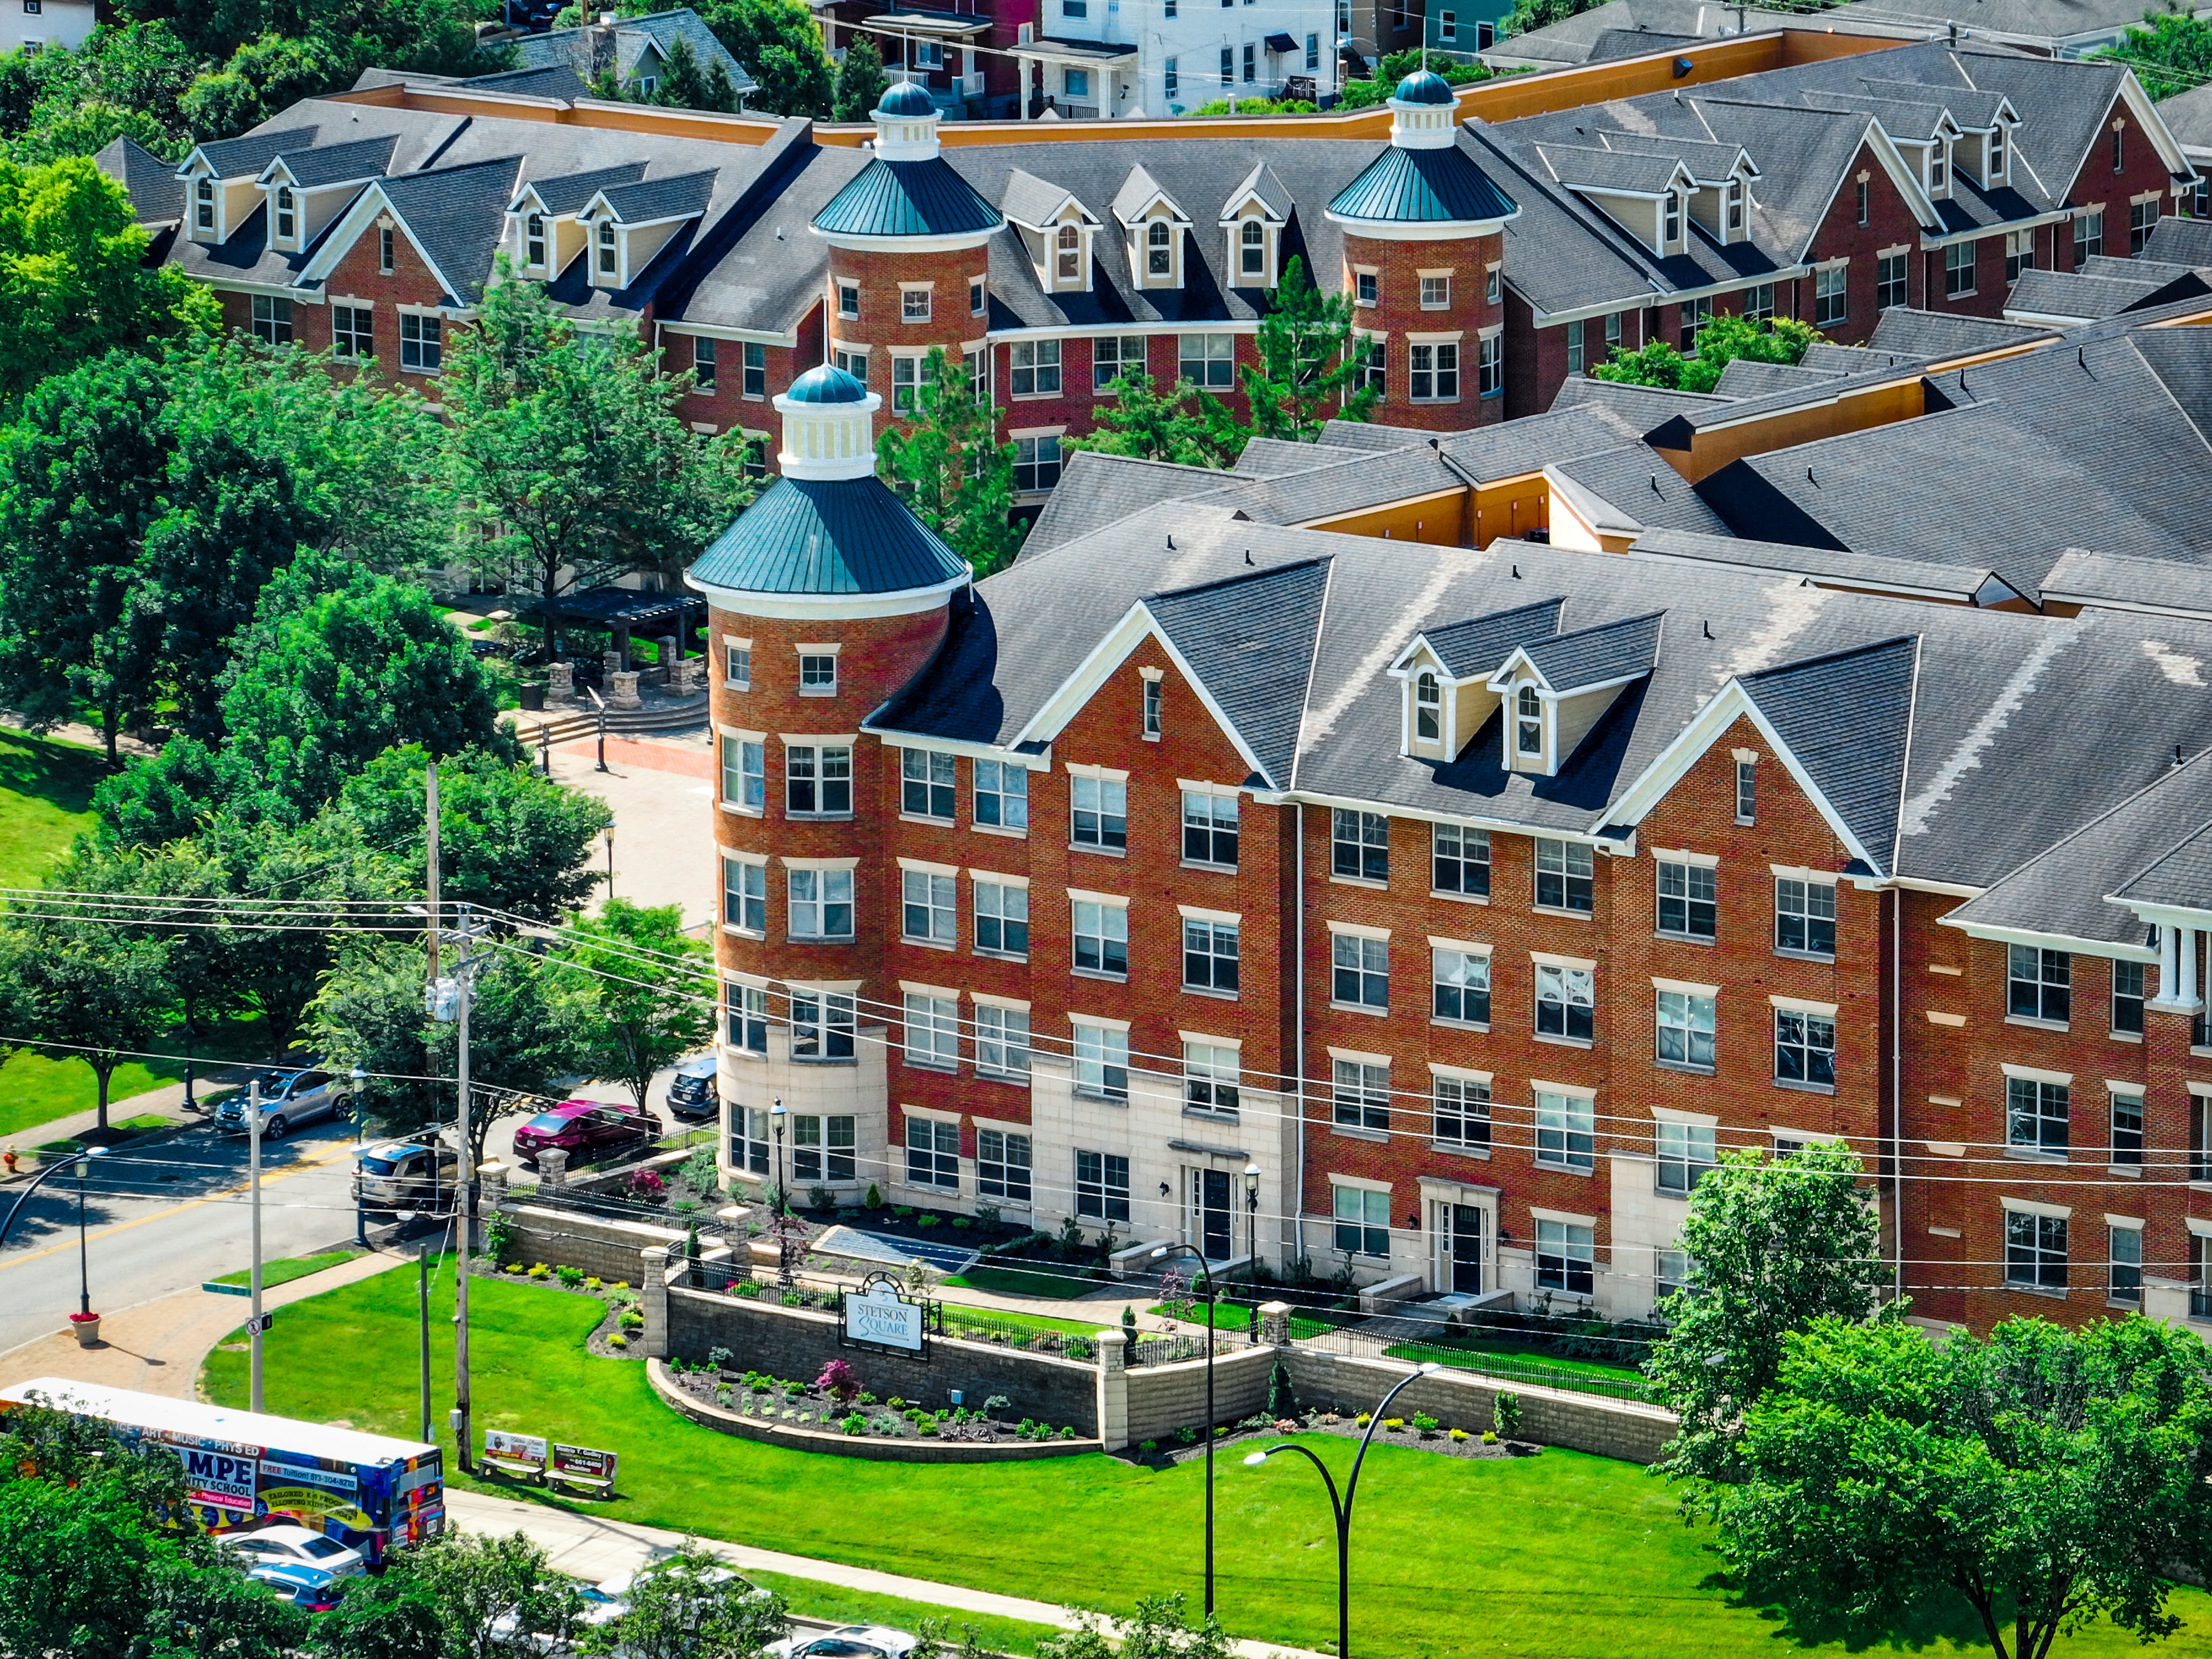 Aerial photo of The Village at Stetson Square in Cincinnati, Ohio